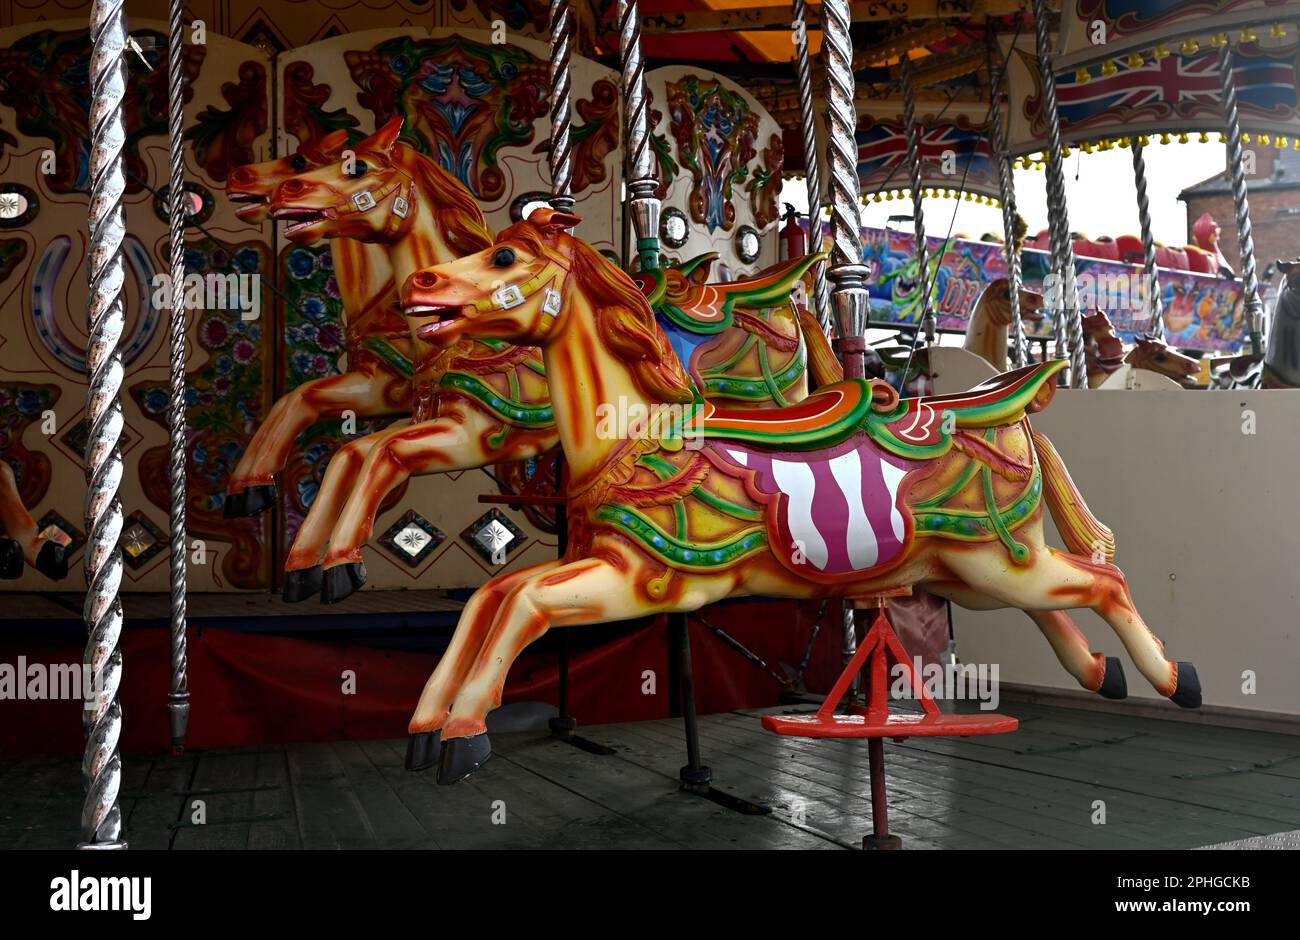 Chevaux peints en carrousel gros plan, manège, Barry Island Pleasure Park, Royaume-Uni Banque D'Images